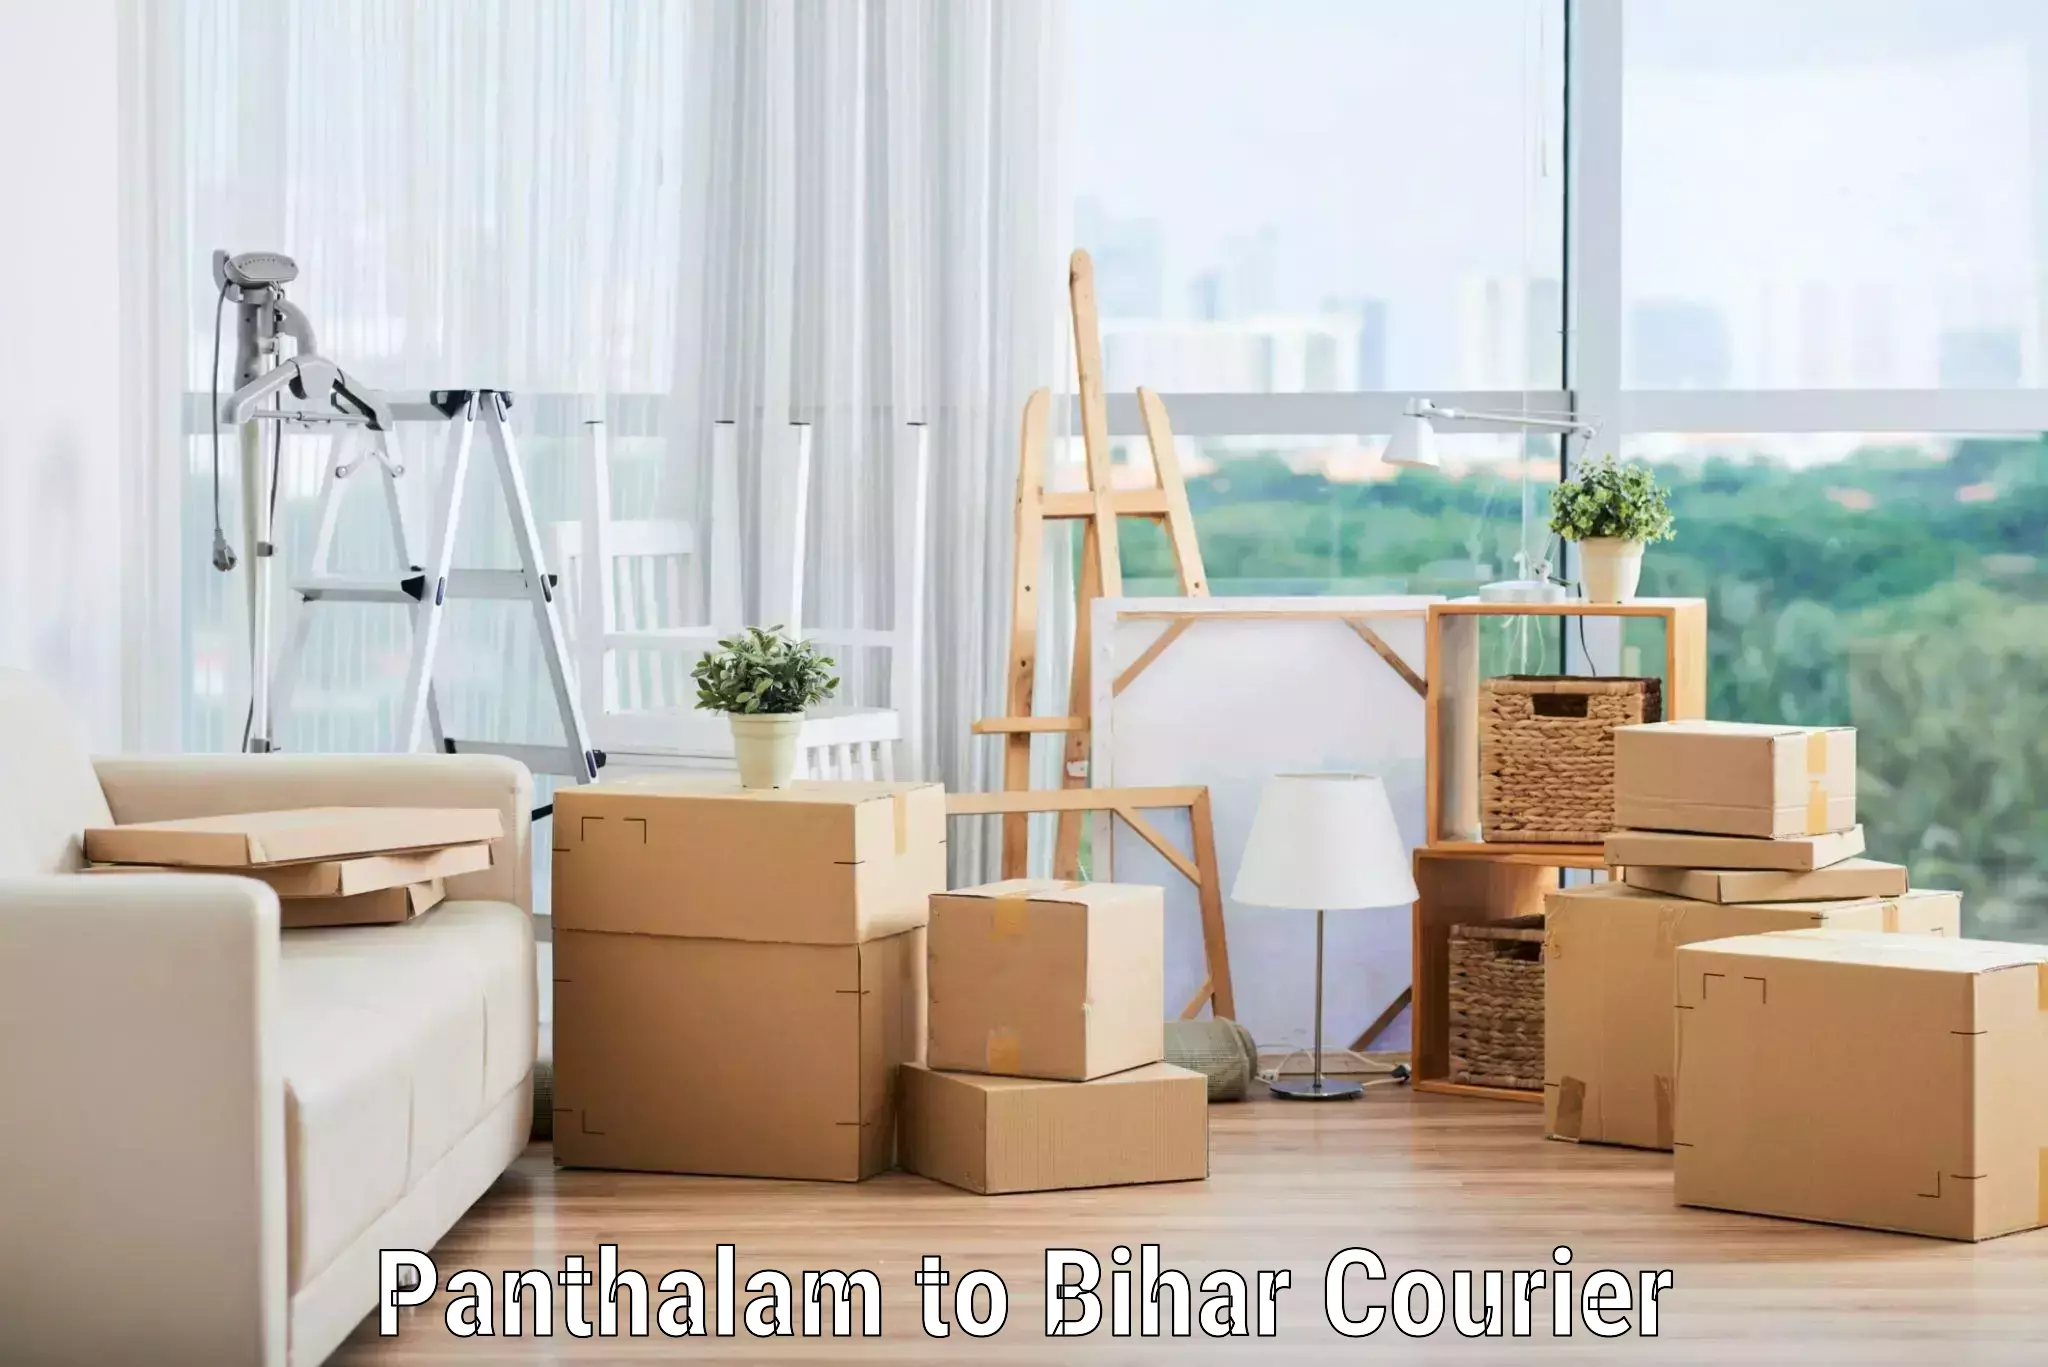 Furniture moving experts Panthalam to Bihar